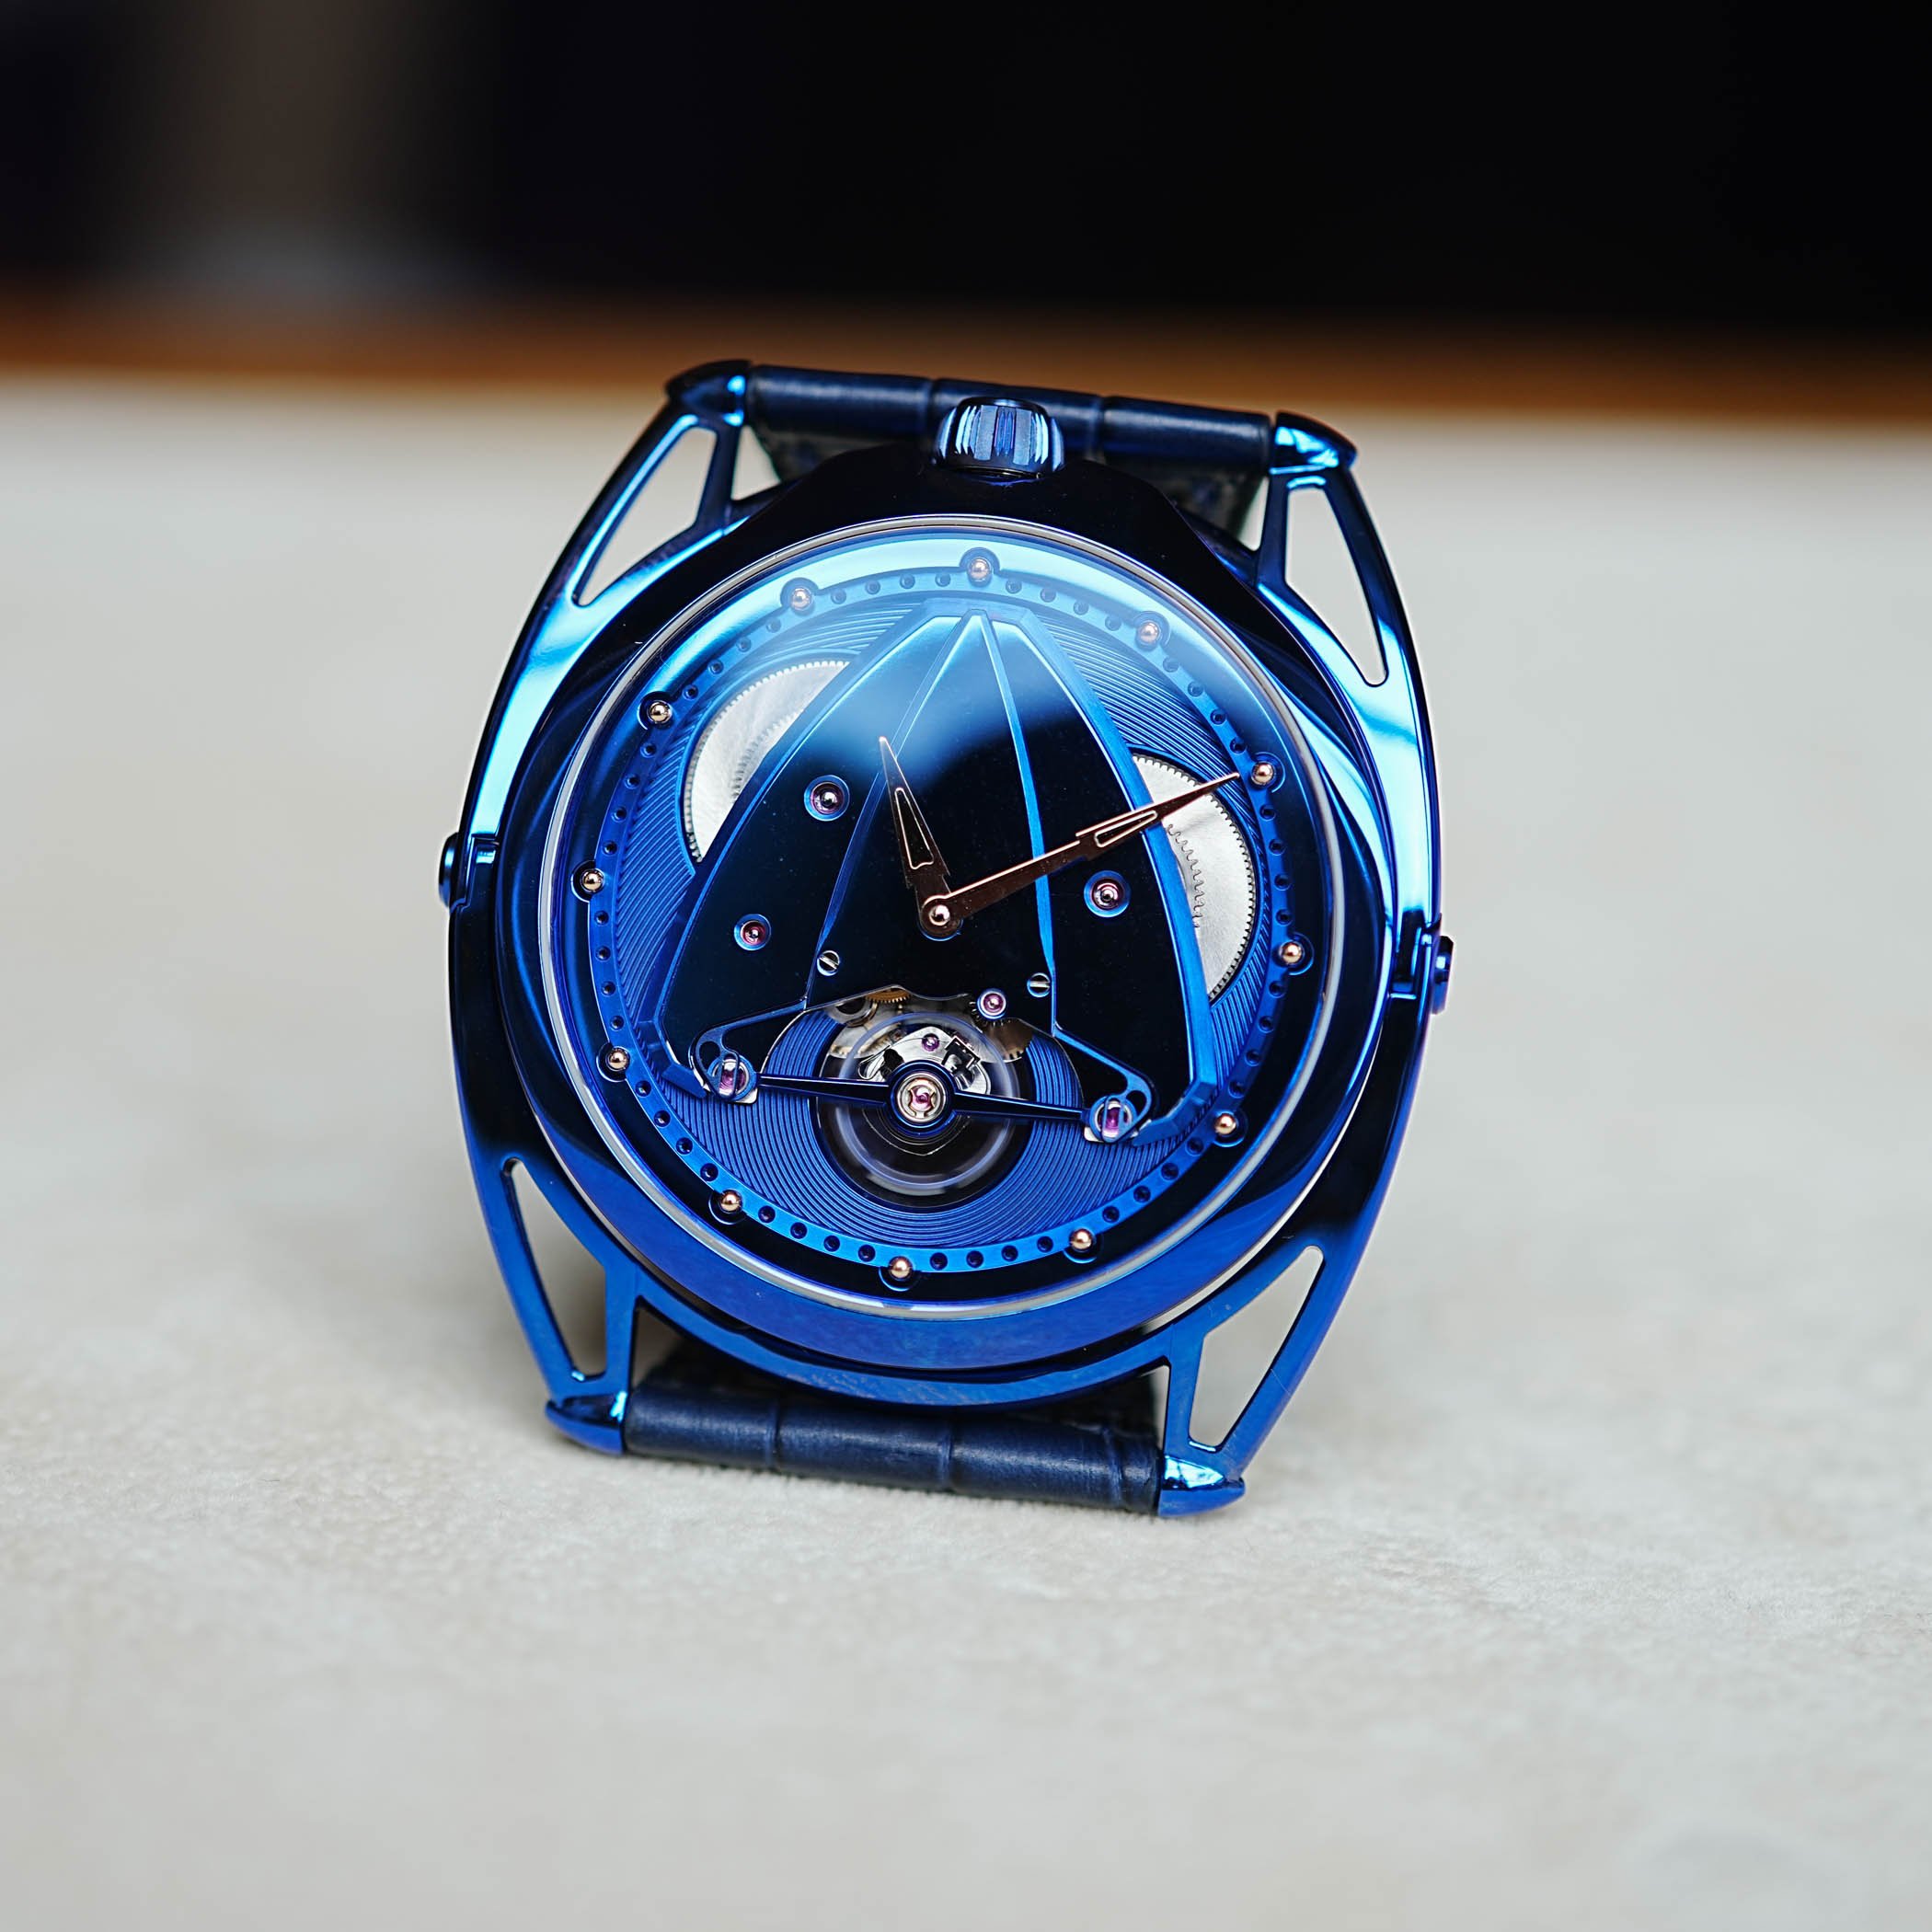 Представление модели часов De Bethune DB28XP Kind Of Blue